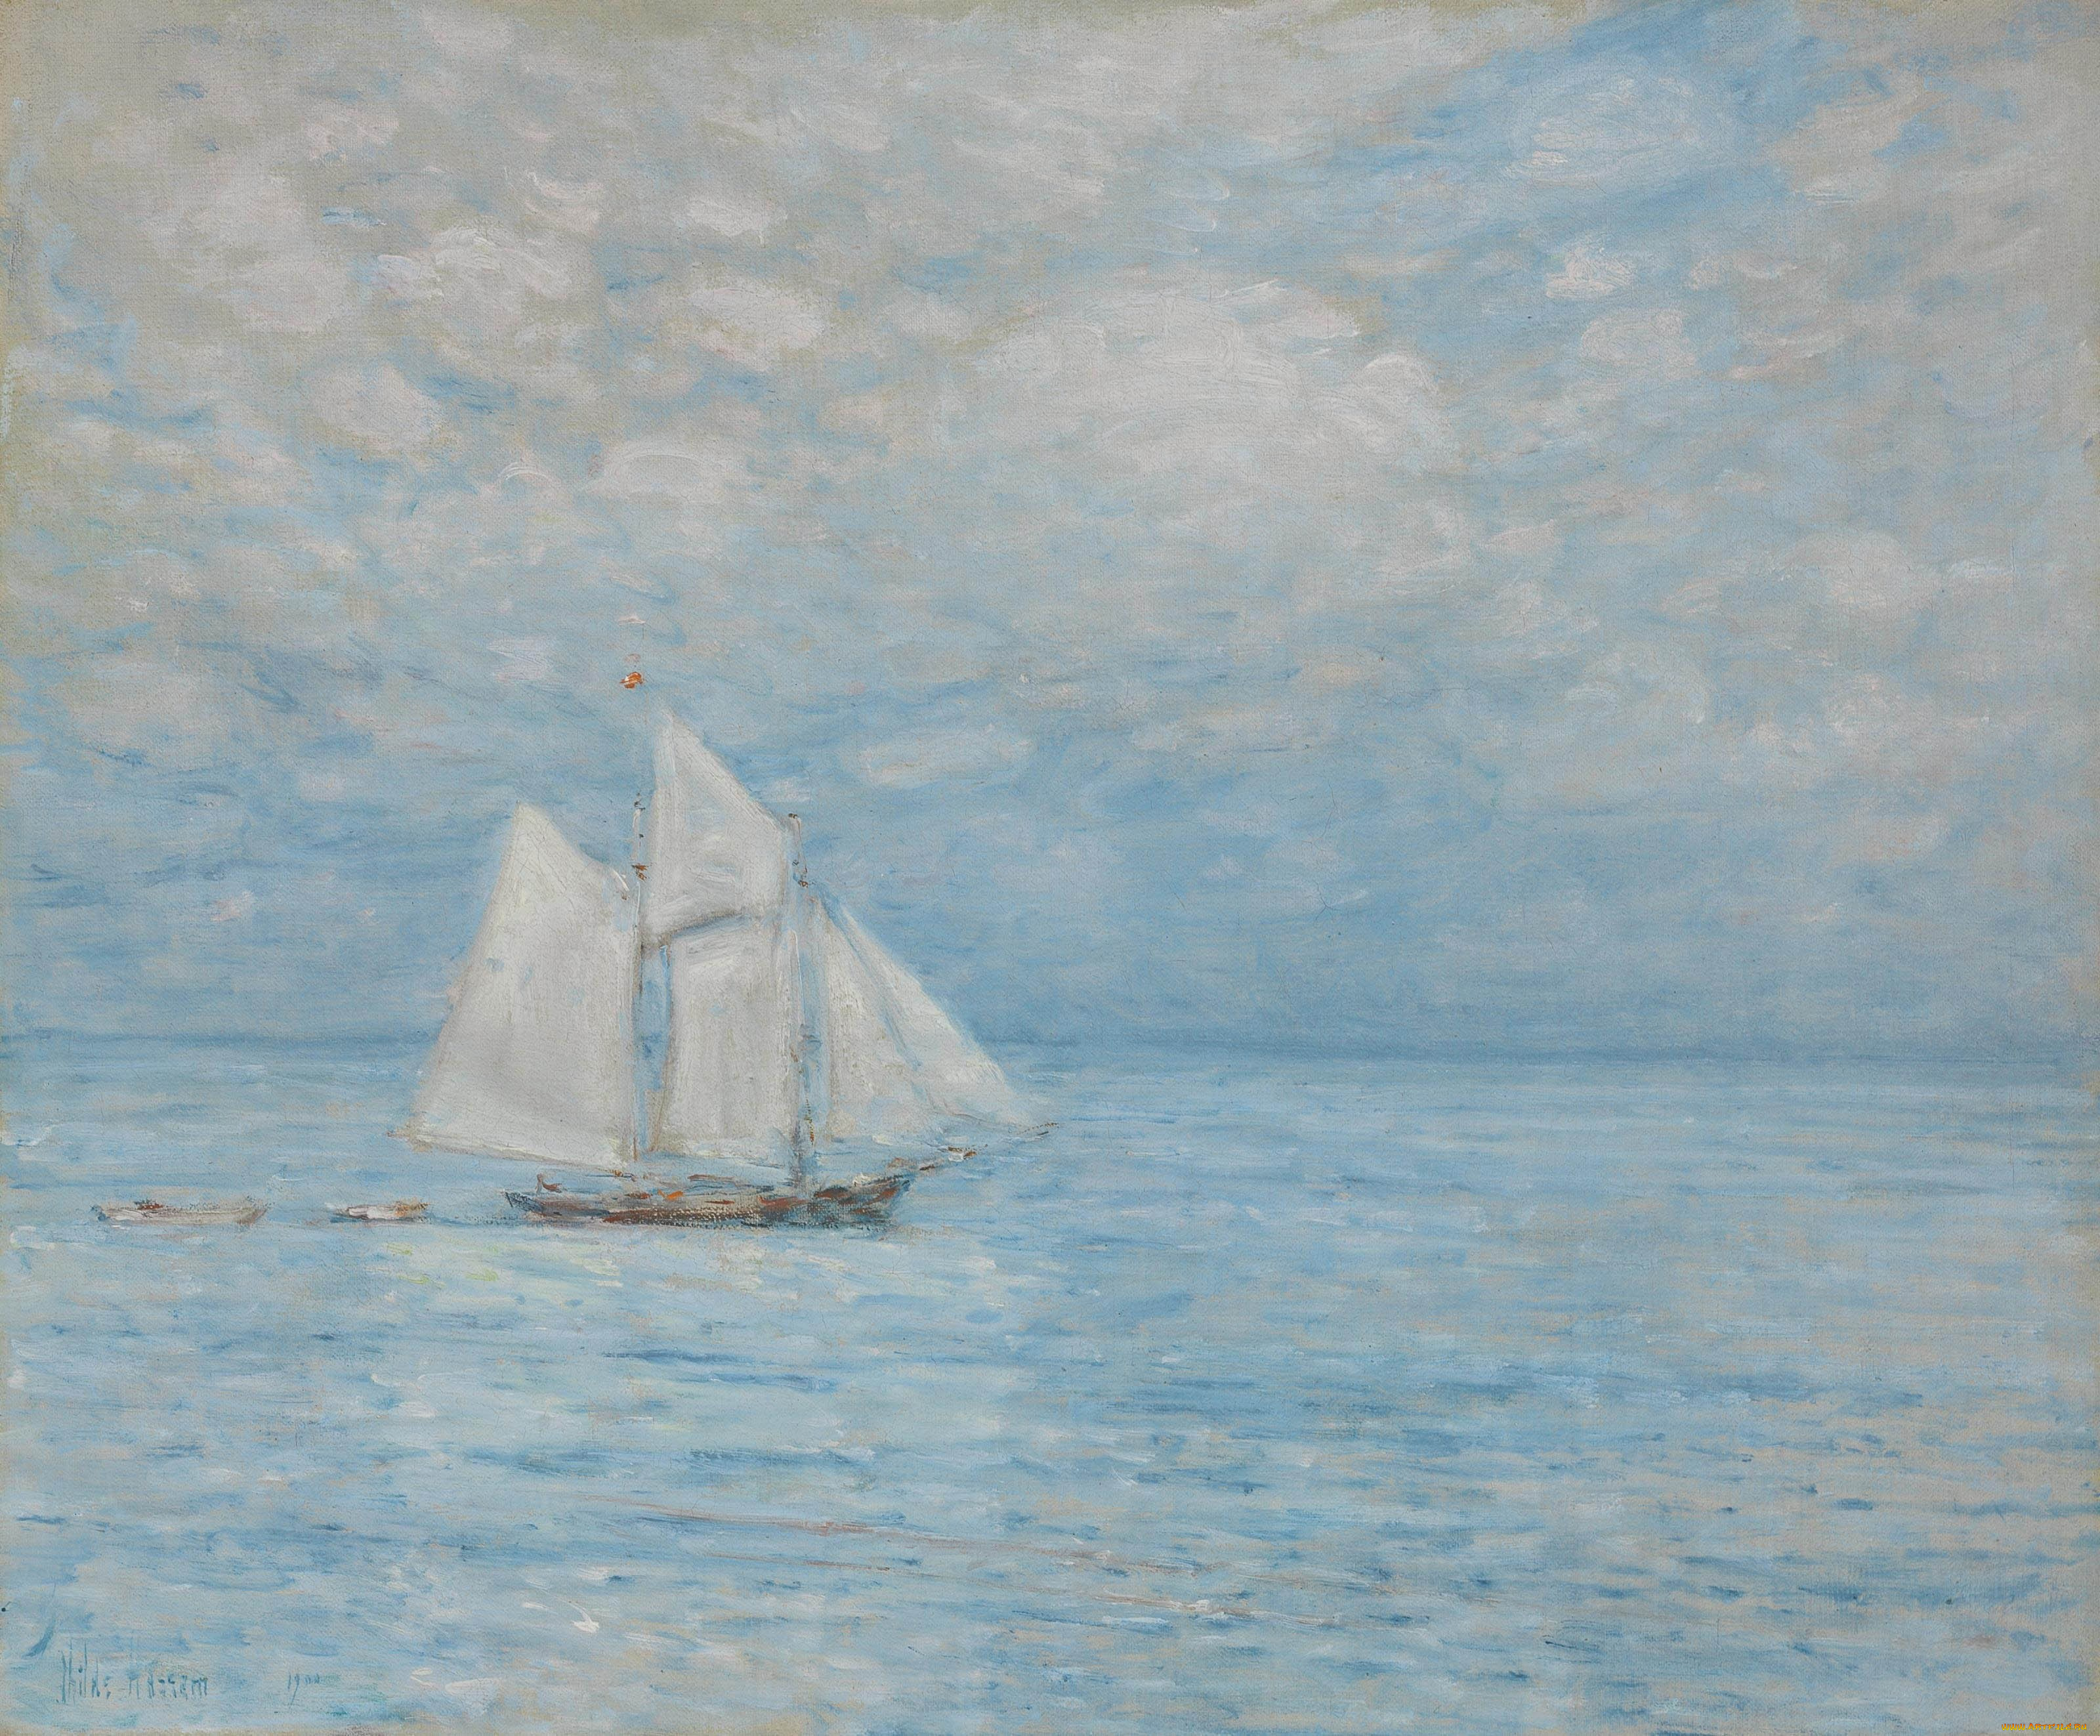 sailing, on, calm, seas, рисованное, frederick, childe, hassam, небо, облака, море, парусник, корабль